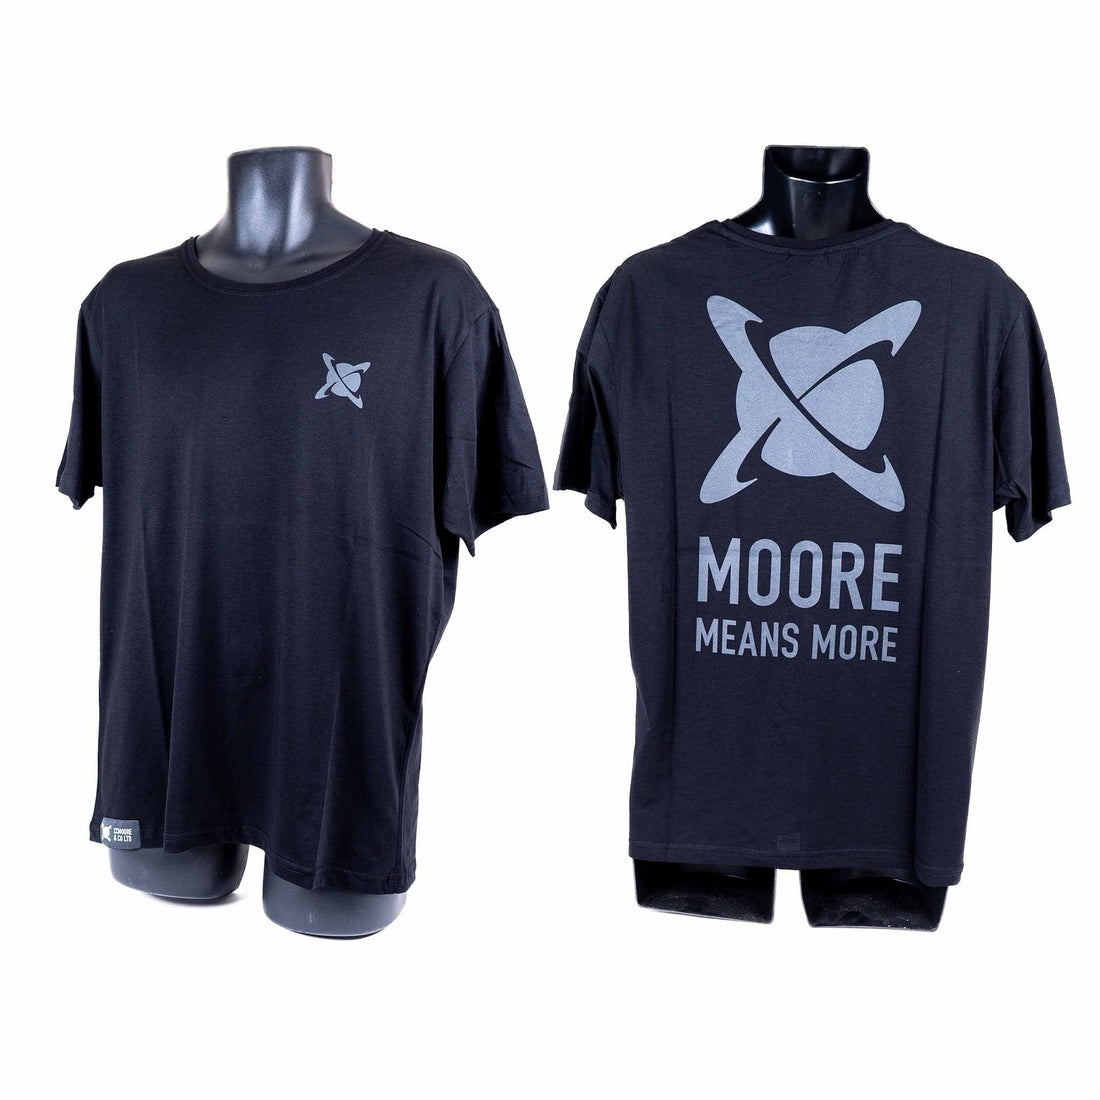 CC Moore Black T-Shirt XXXLarge